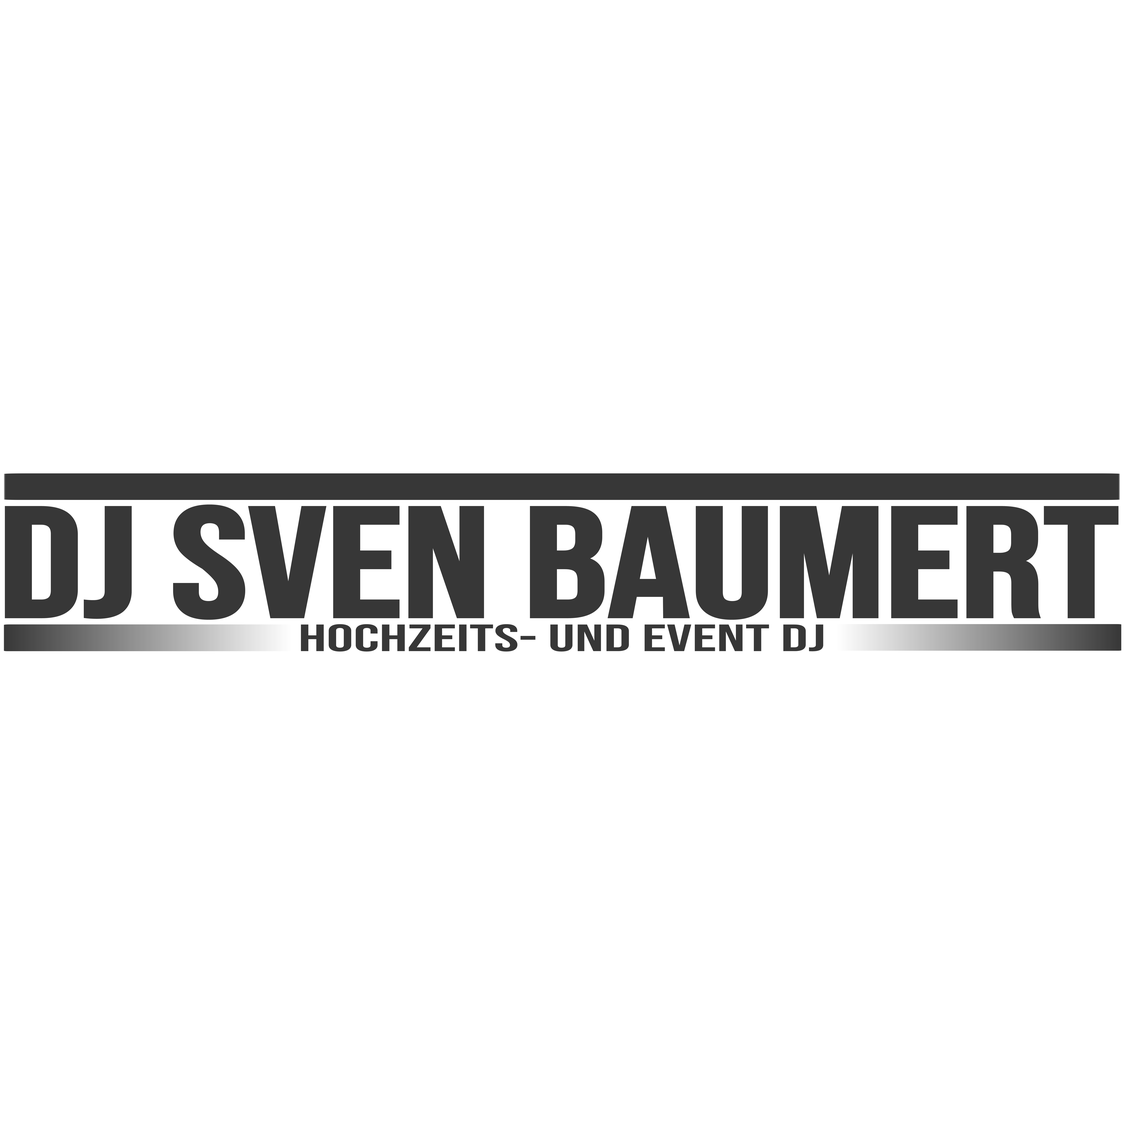 DJ Sven Baumert - Hochzeits- und Event DJ in Gettorf - Logo